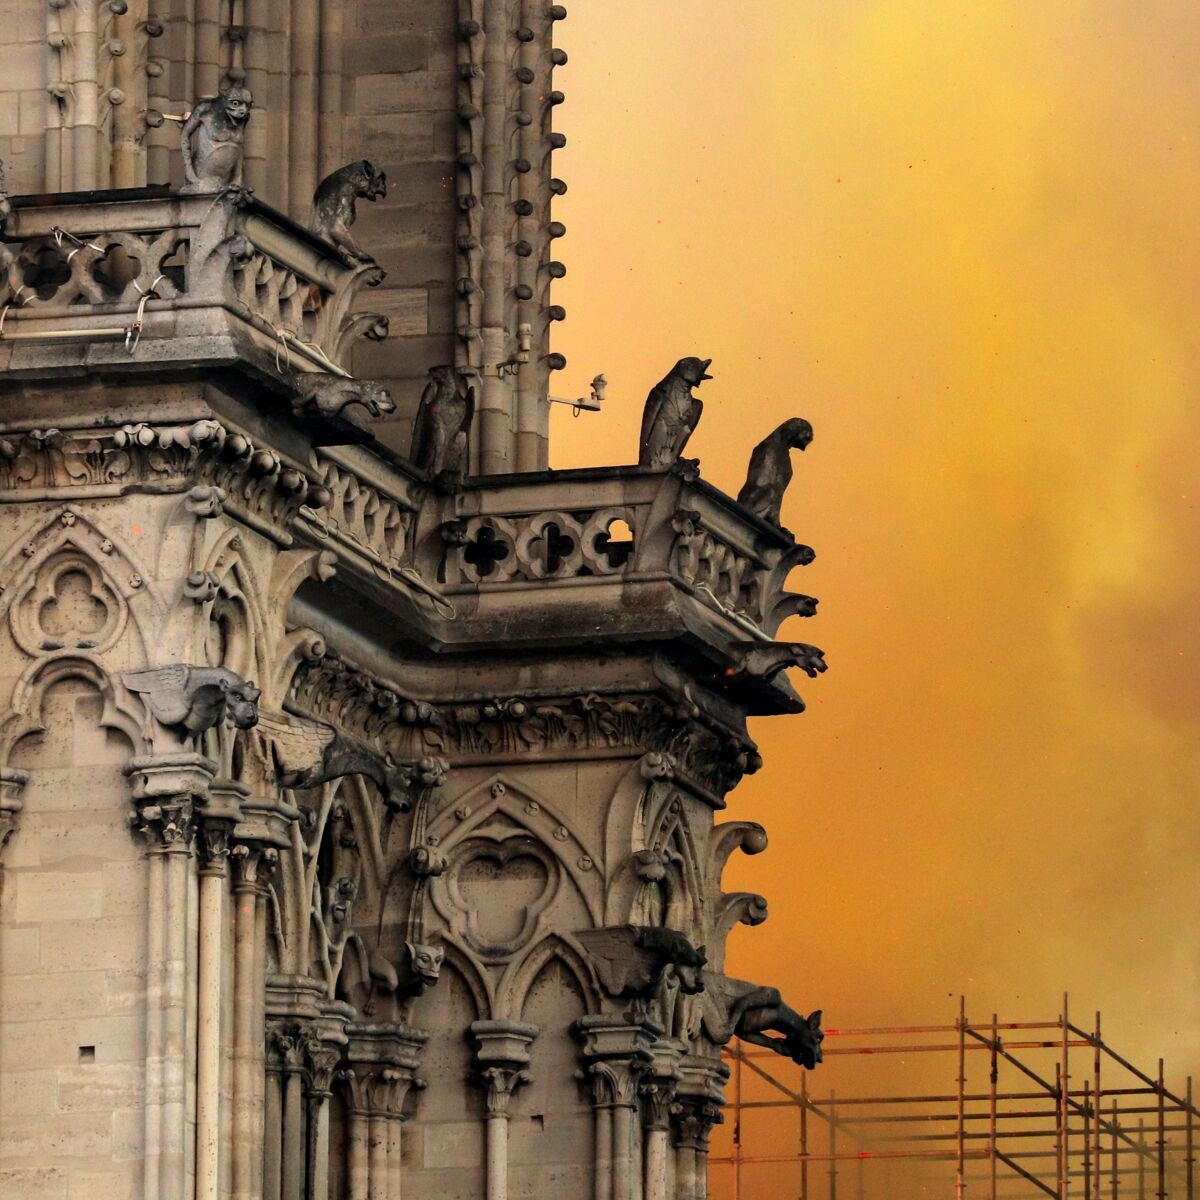 Arnault et Pinault confirment leurs dons pour la restauration de Notre-Dame